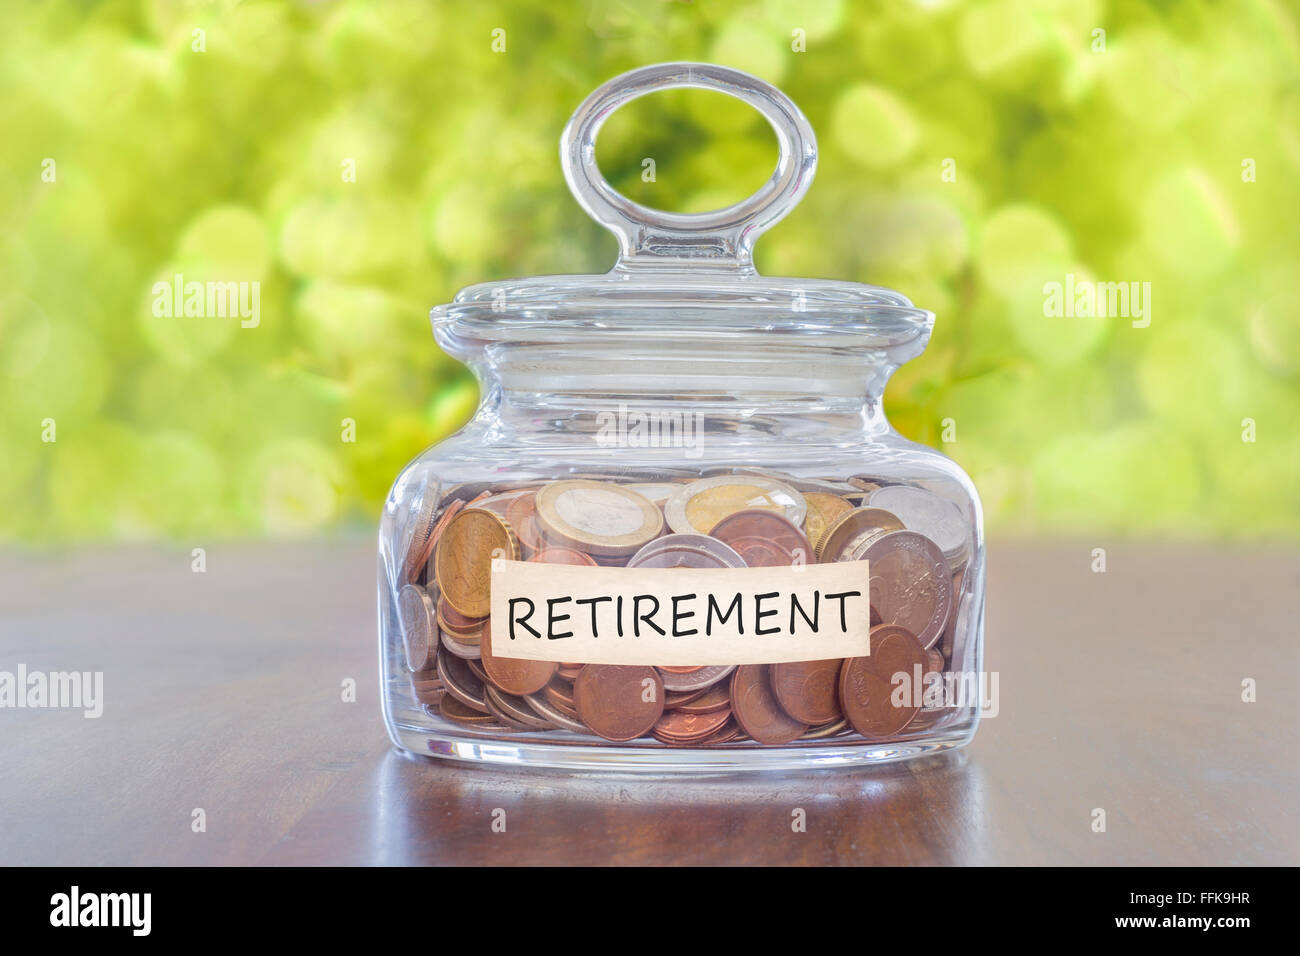 pension savings Stock Photo